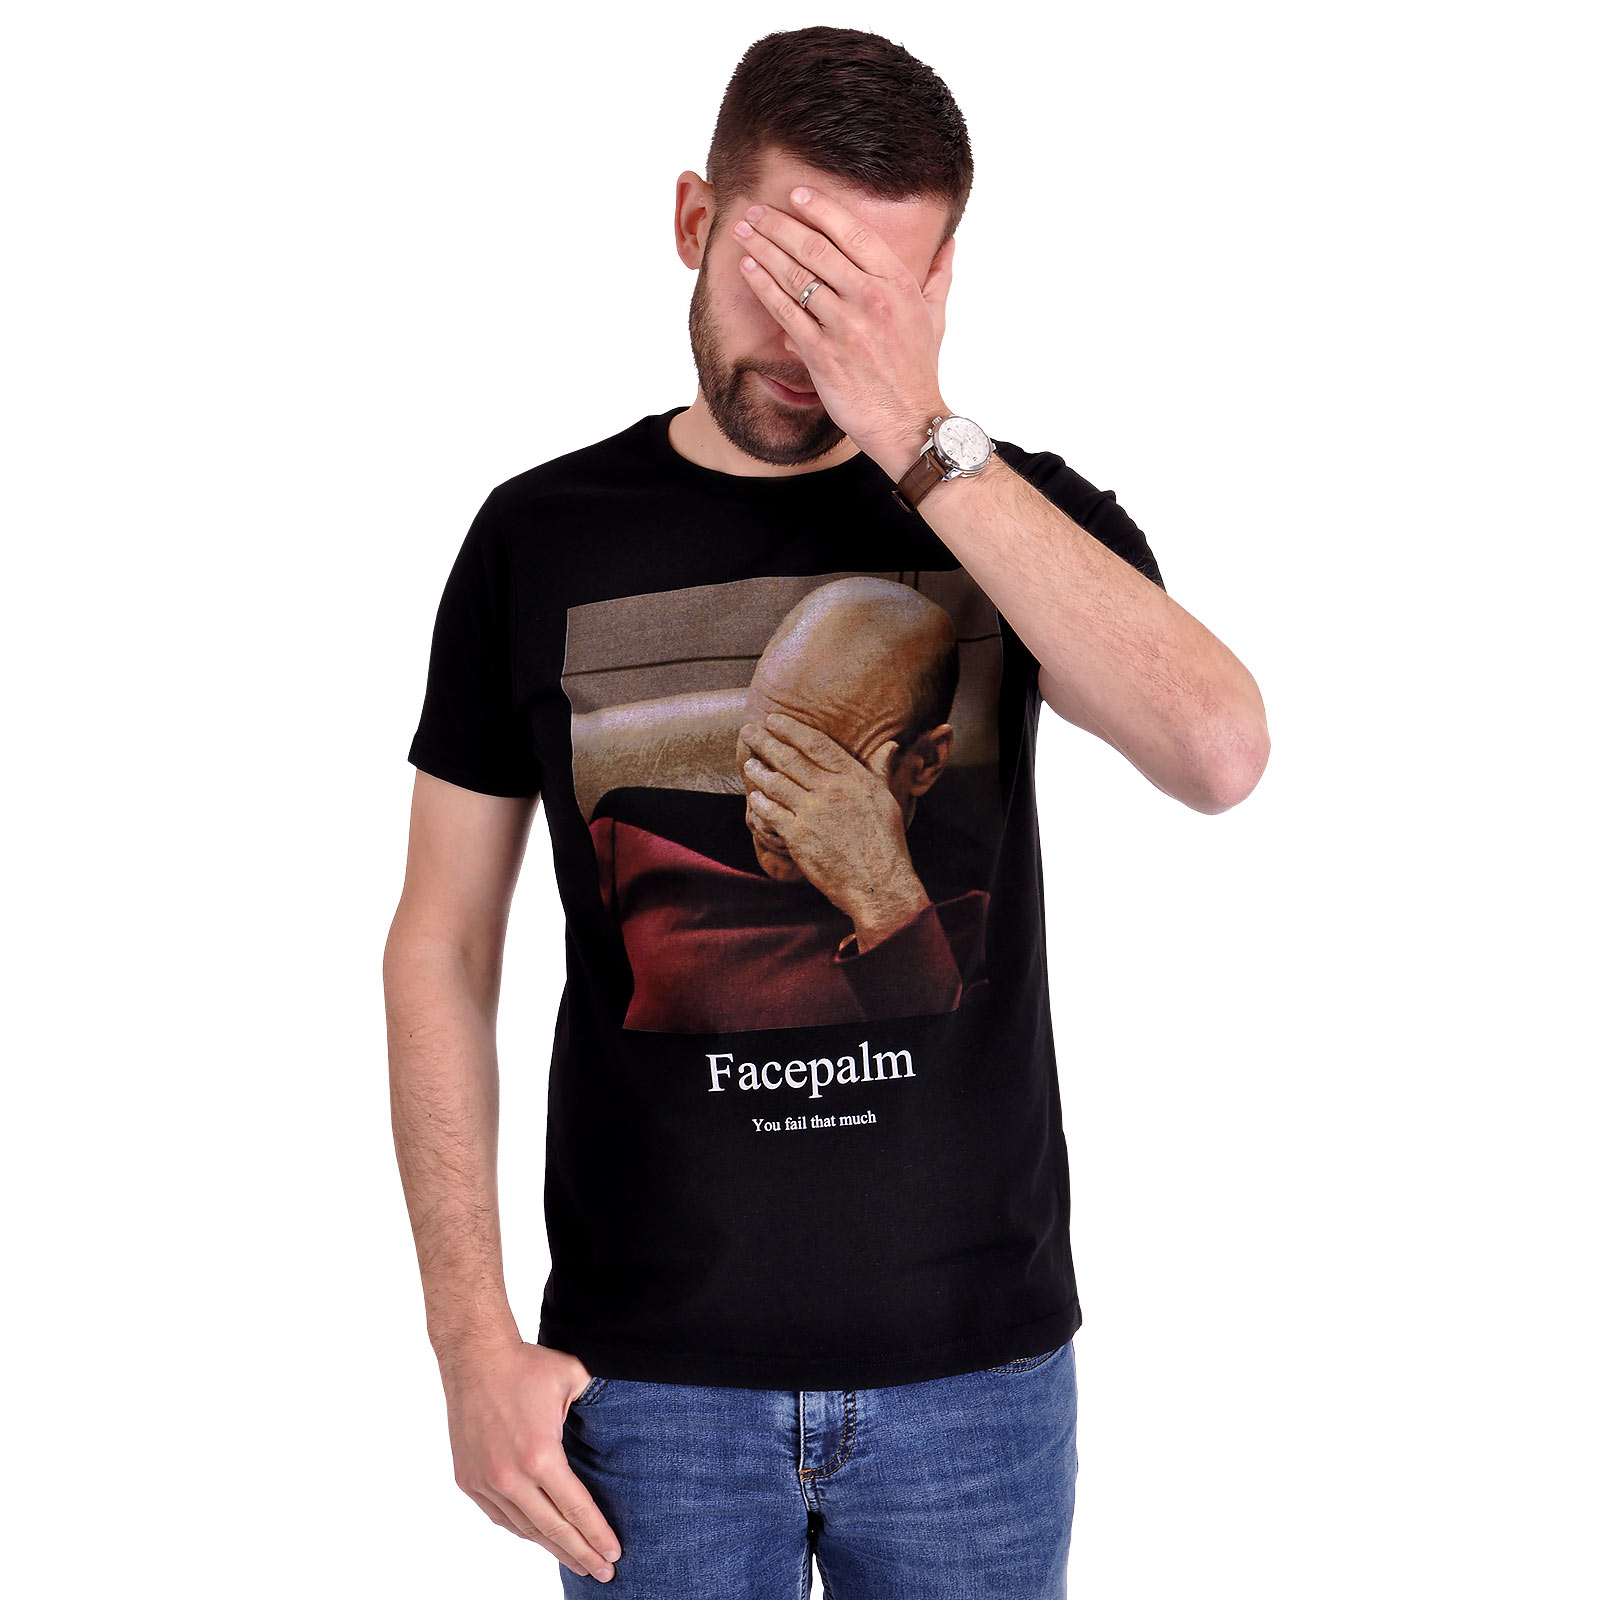 Star Trek - T-shirt Picard Facepalm noir